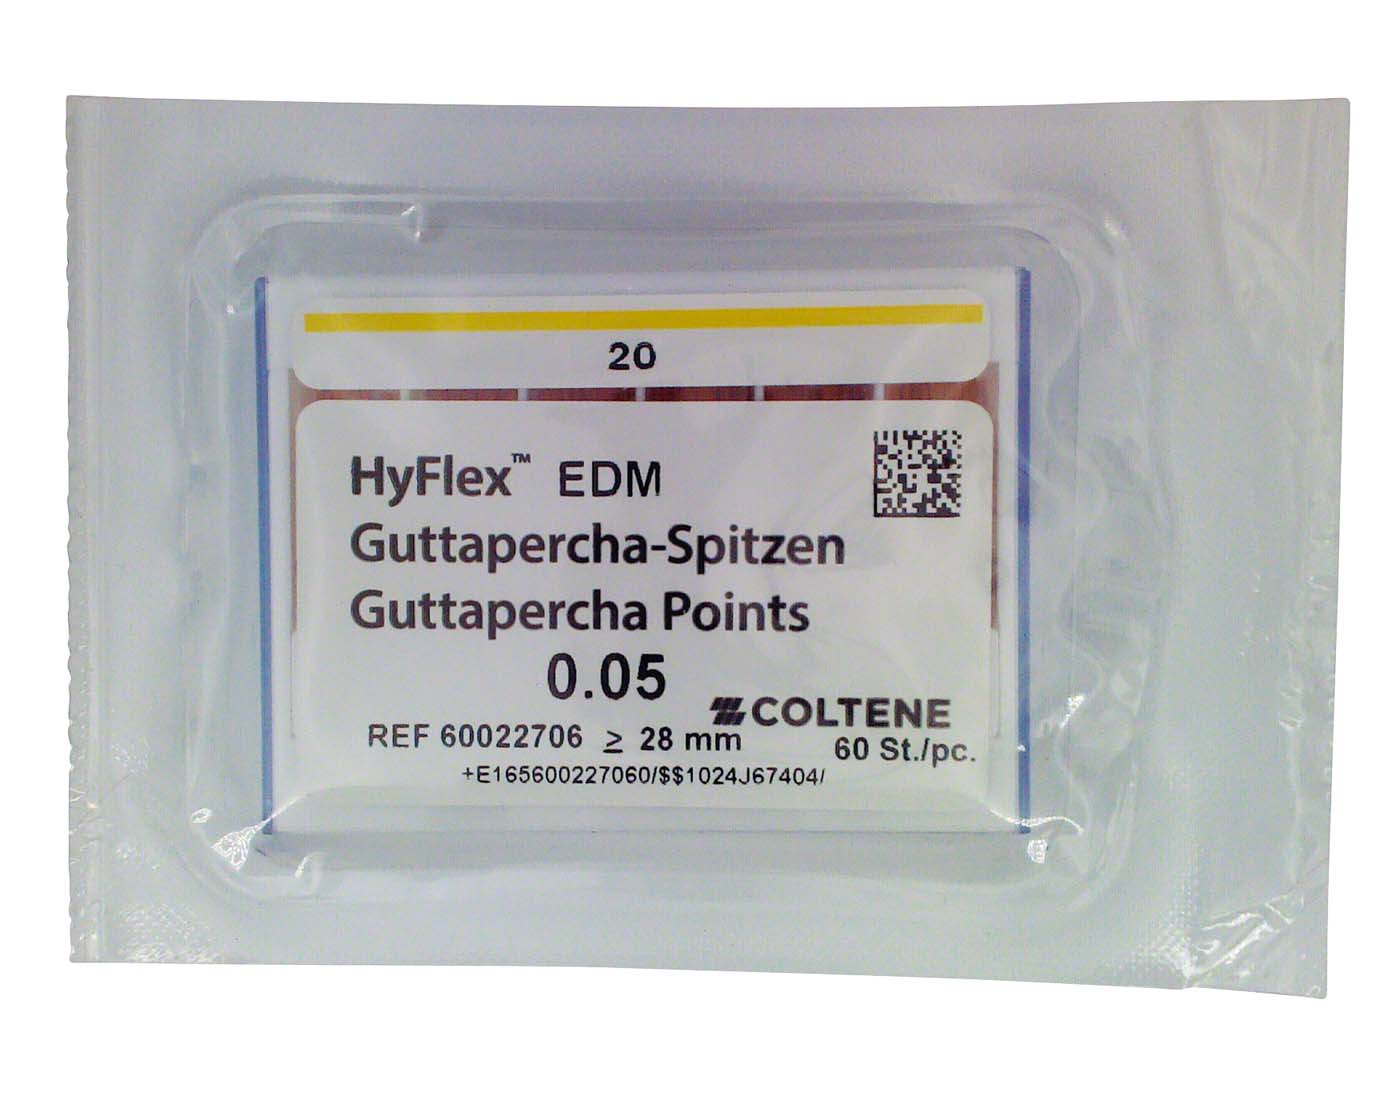 HyFlex™ EDM Guttapercha-Spitzen COLTENE